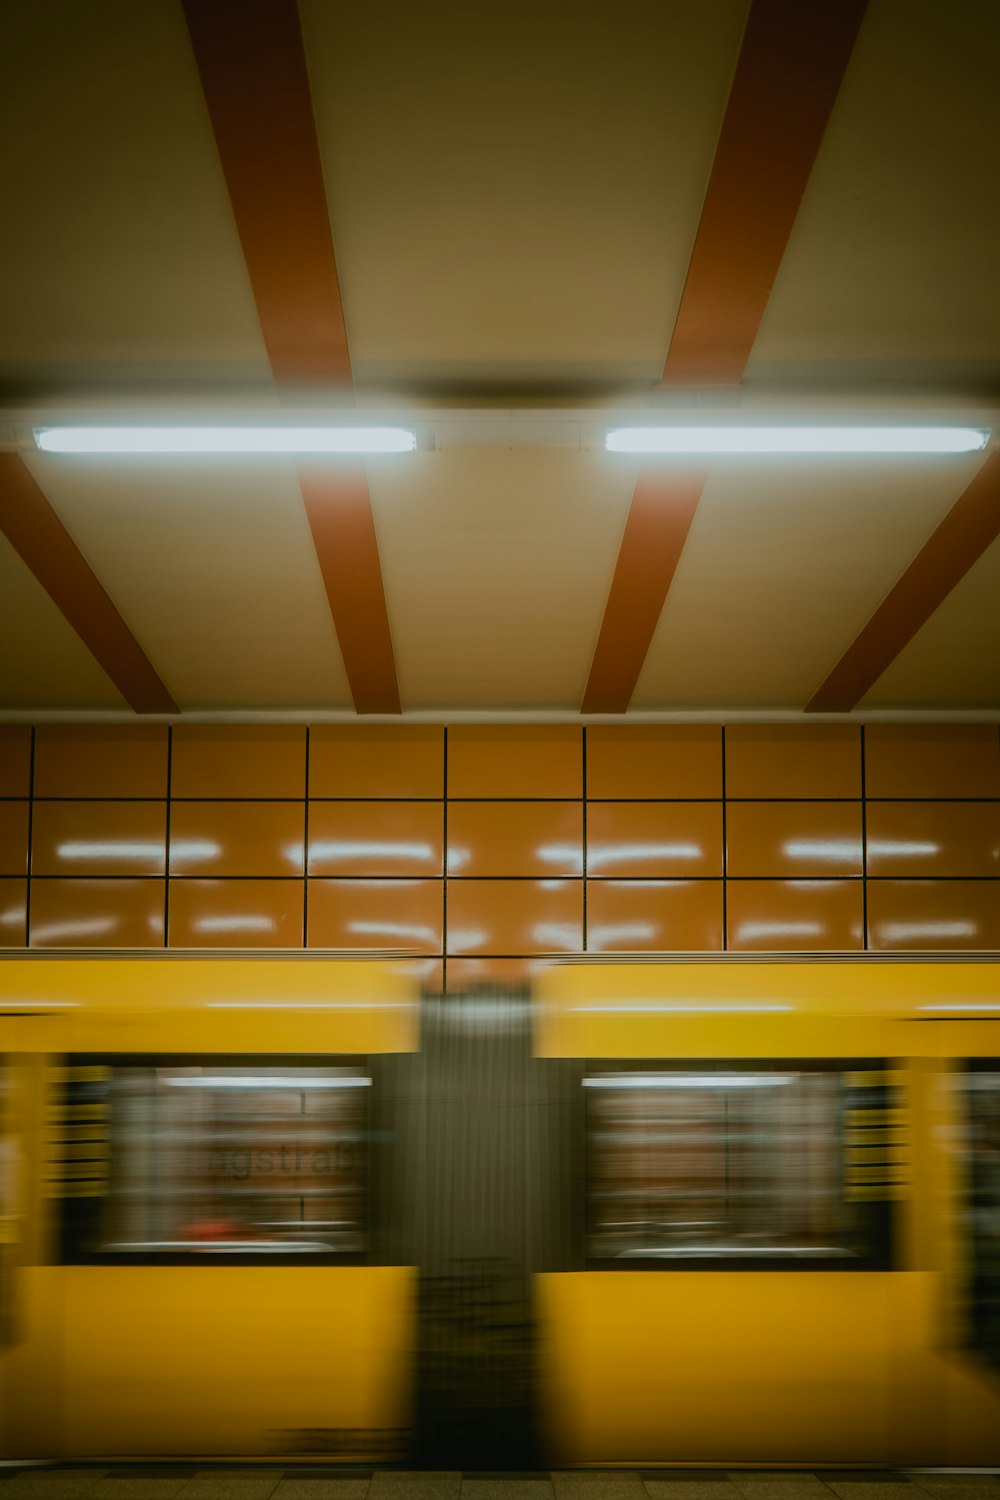 estação de trem amarela e branca